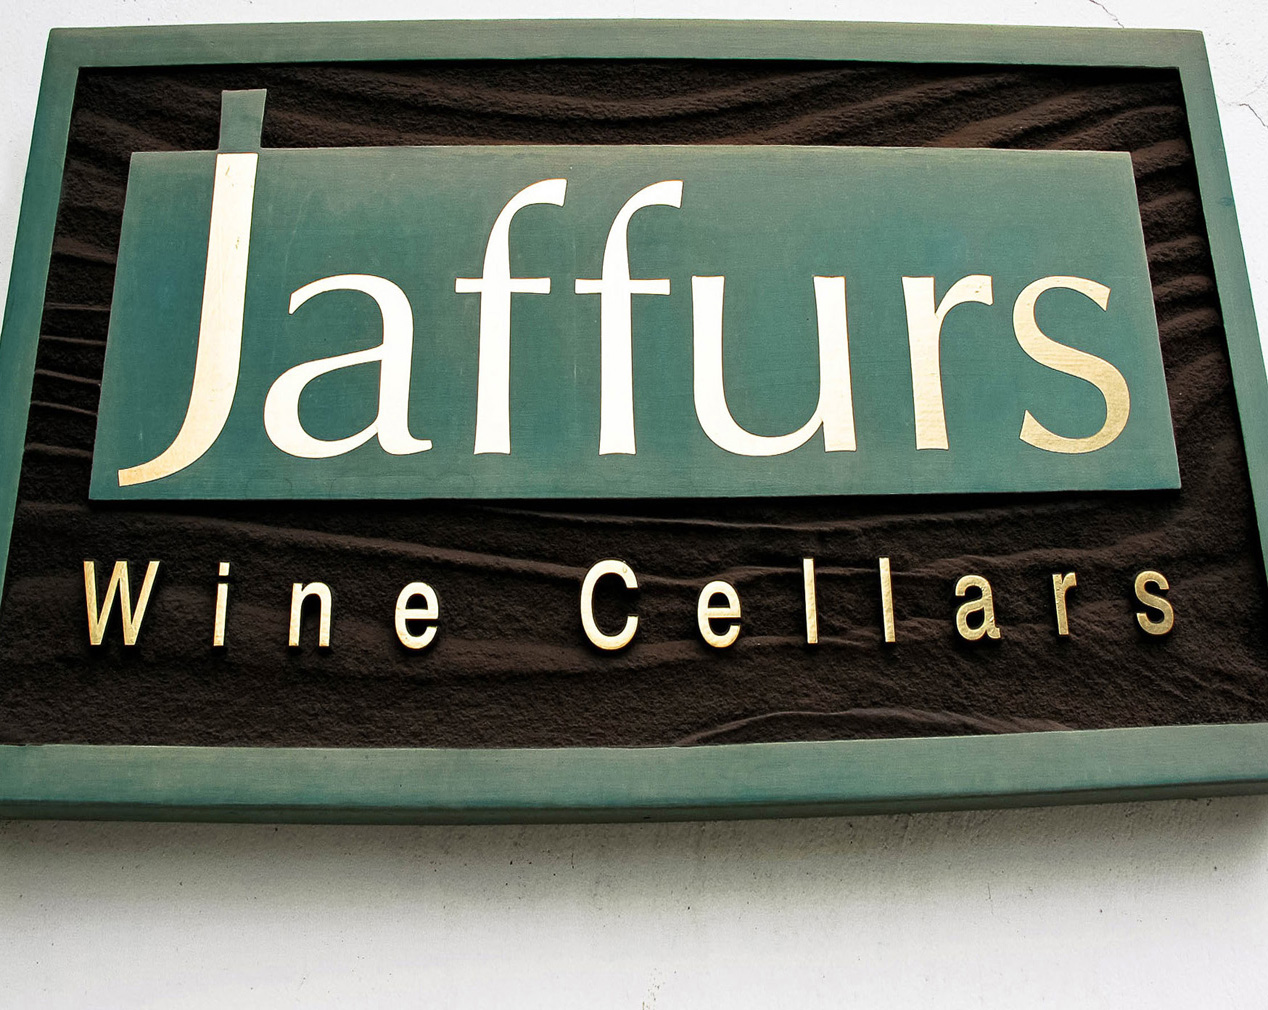 Jaffurs Wine Cellars